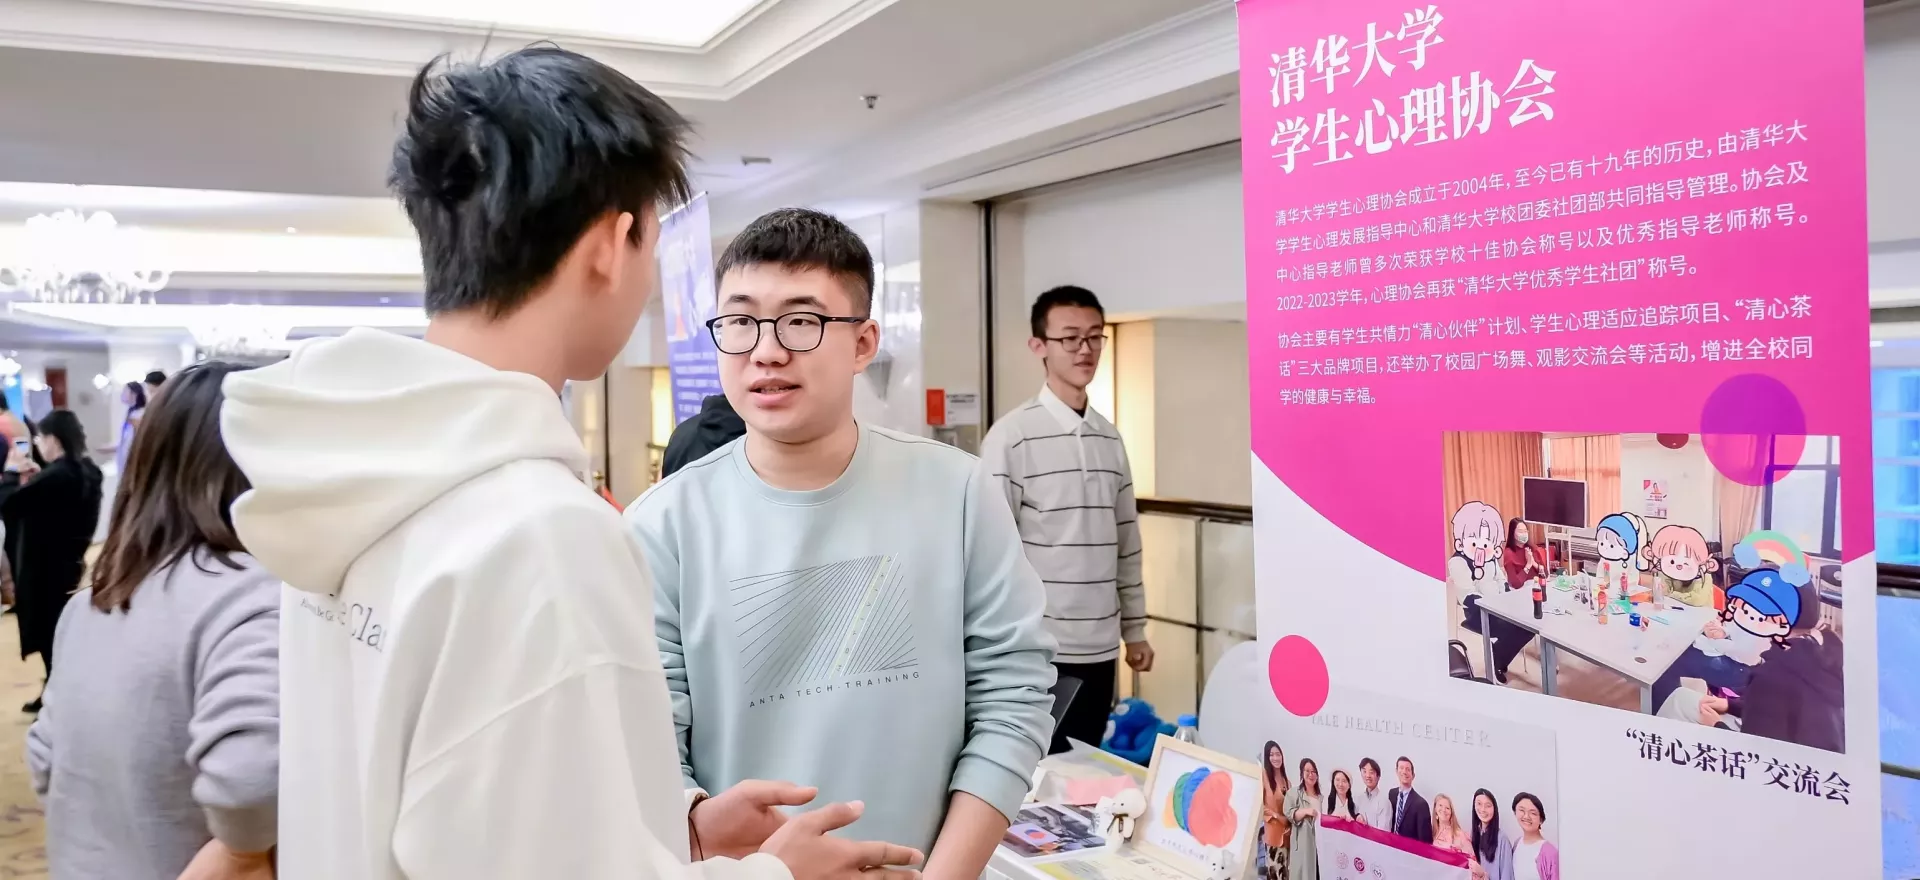 在北京，大学心理健康俱乐部的年轻人宣传同伴支持活动。